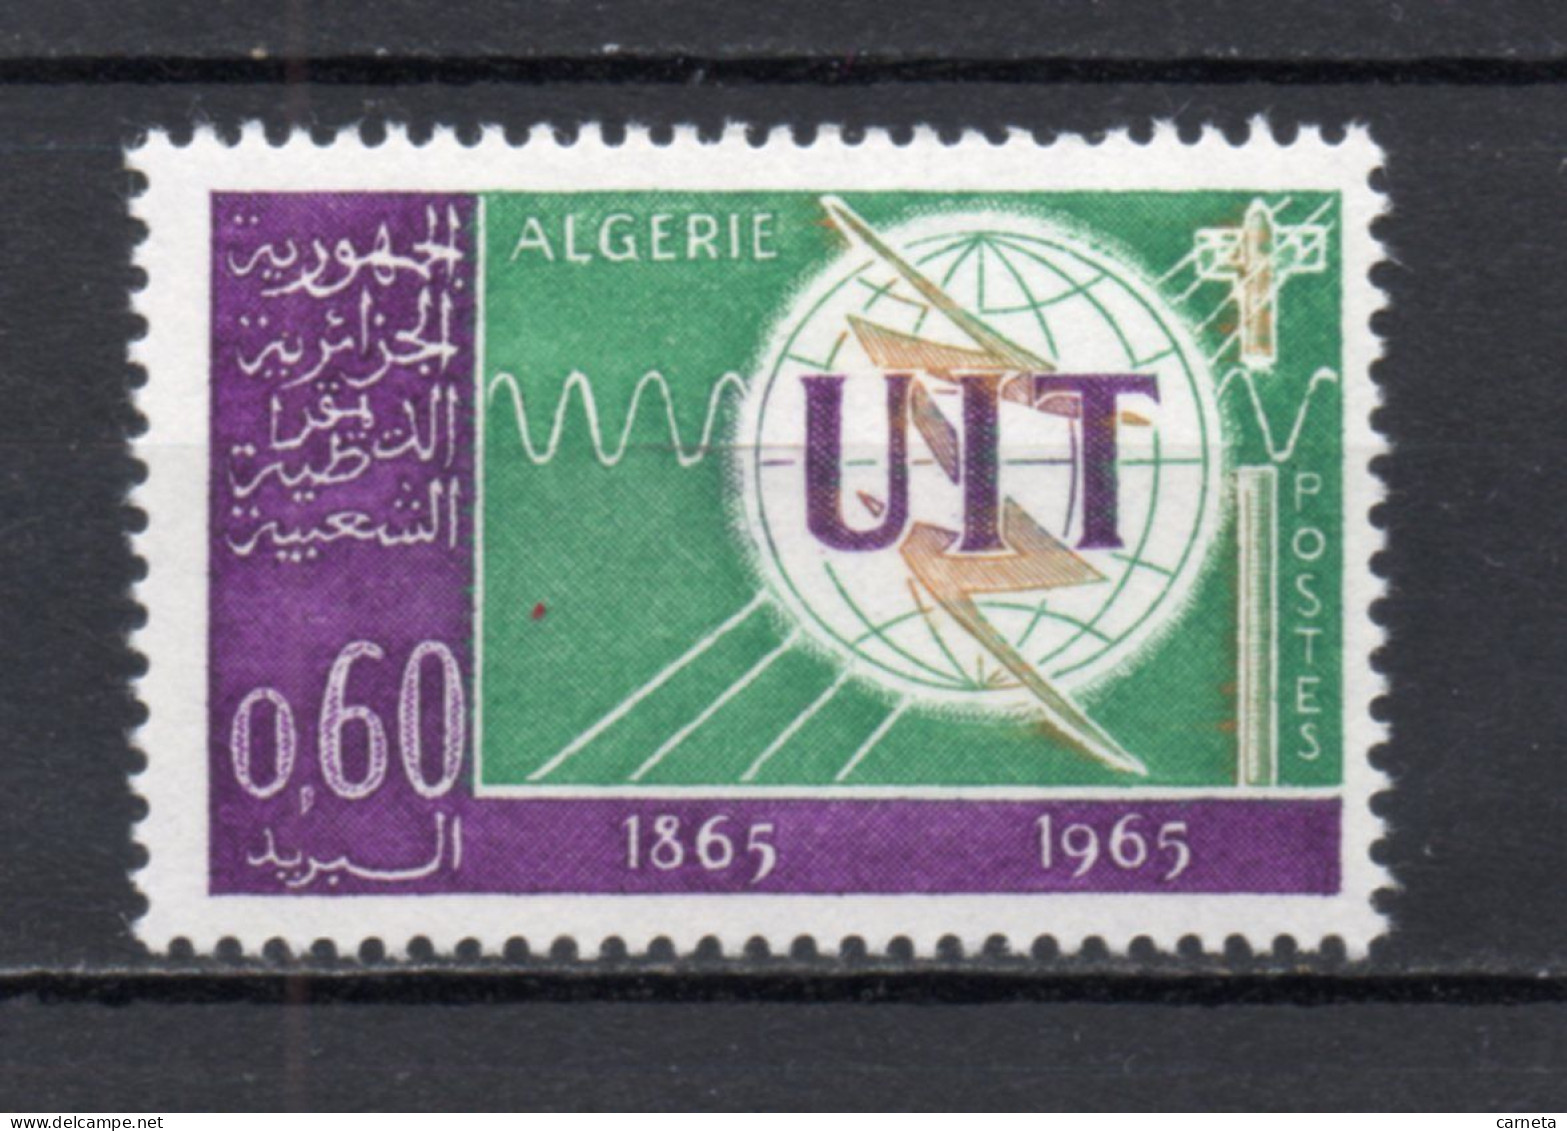 ALGERIE N° 409   NEUF SANS CHARNIERE COTE 1.20€    TELECOMMUNICATIONS UIT - Algeria (1962-...)